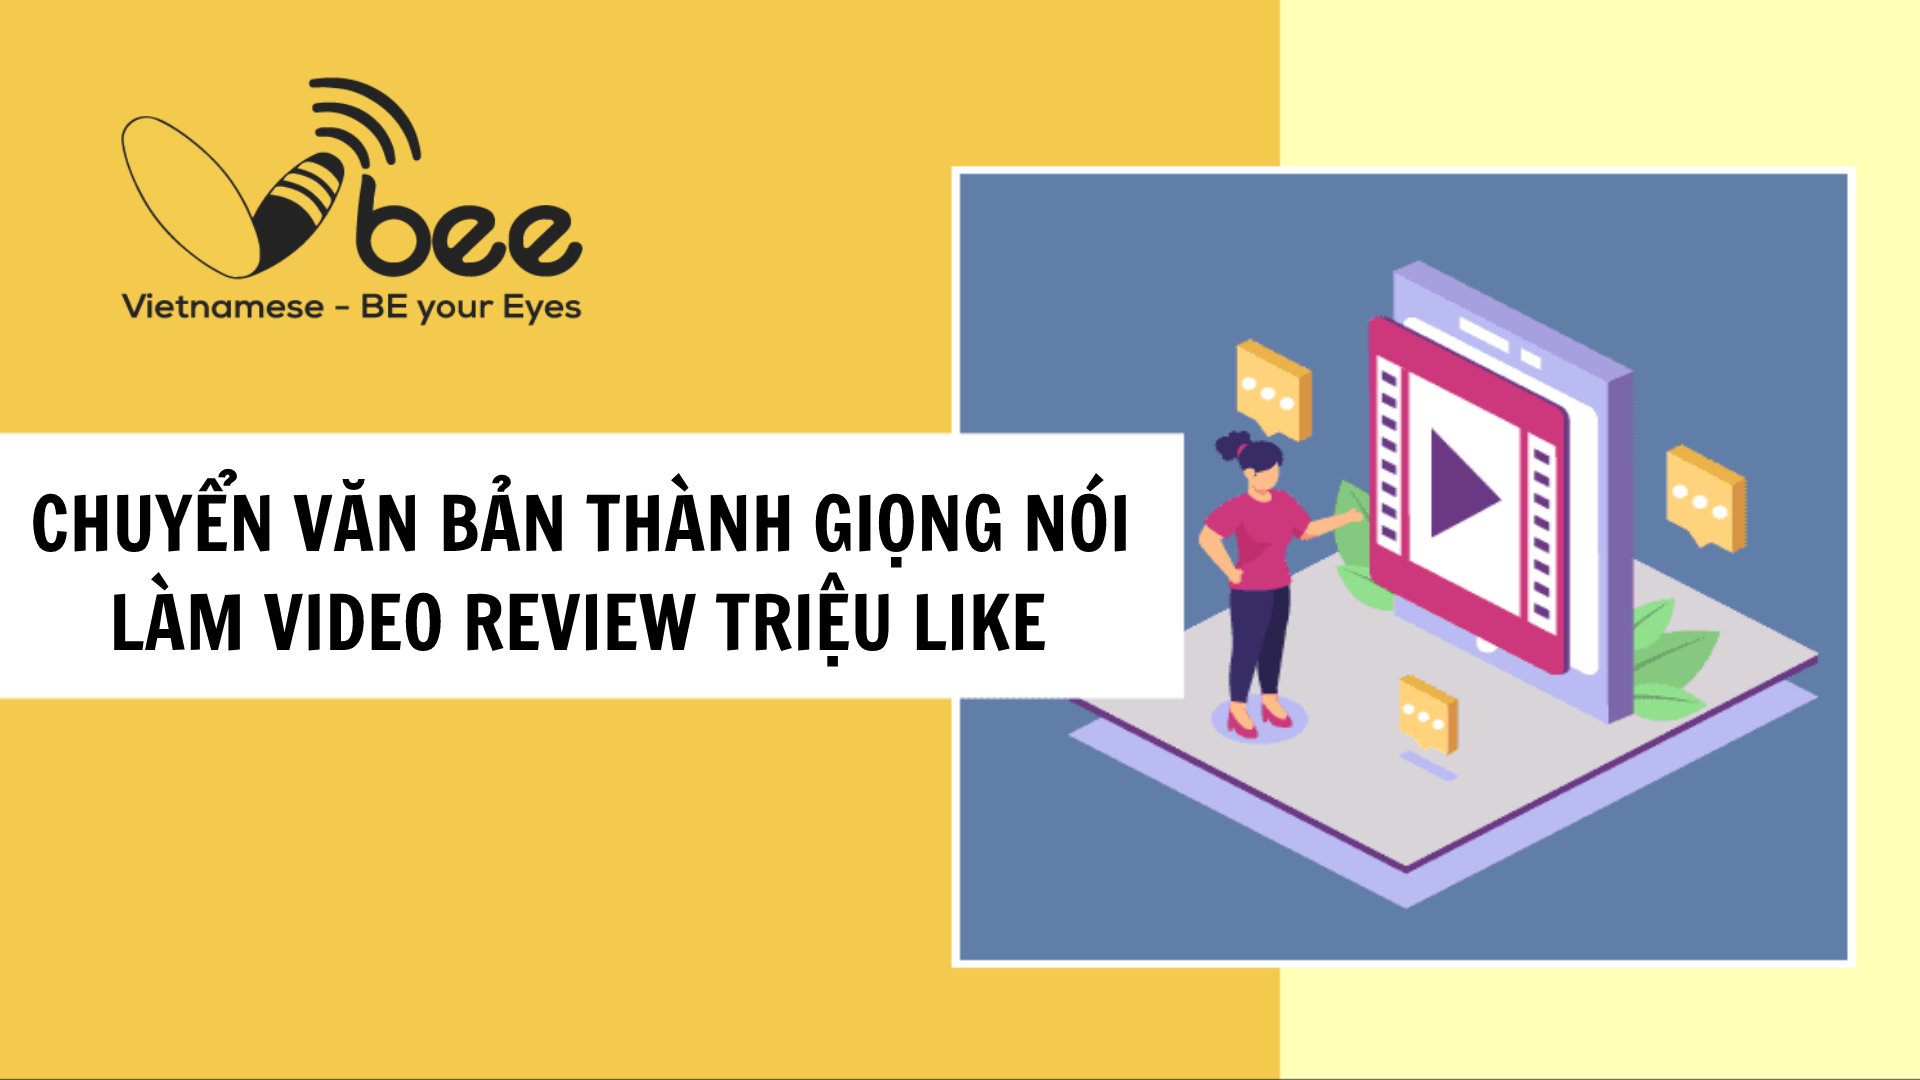 VBee chuyển đổi văn bản sang giọng nói có cảm xúc | Clash of Clans Việt